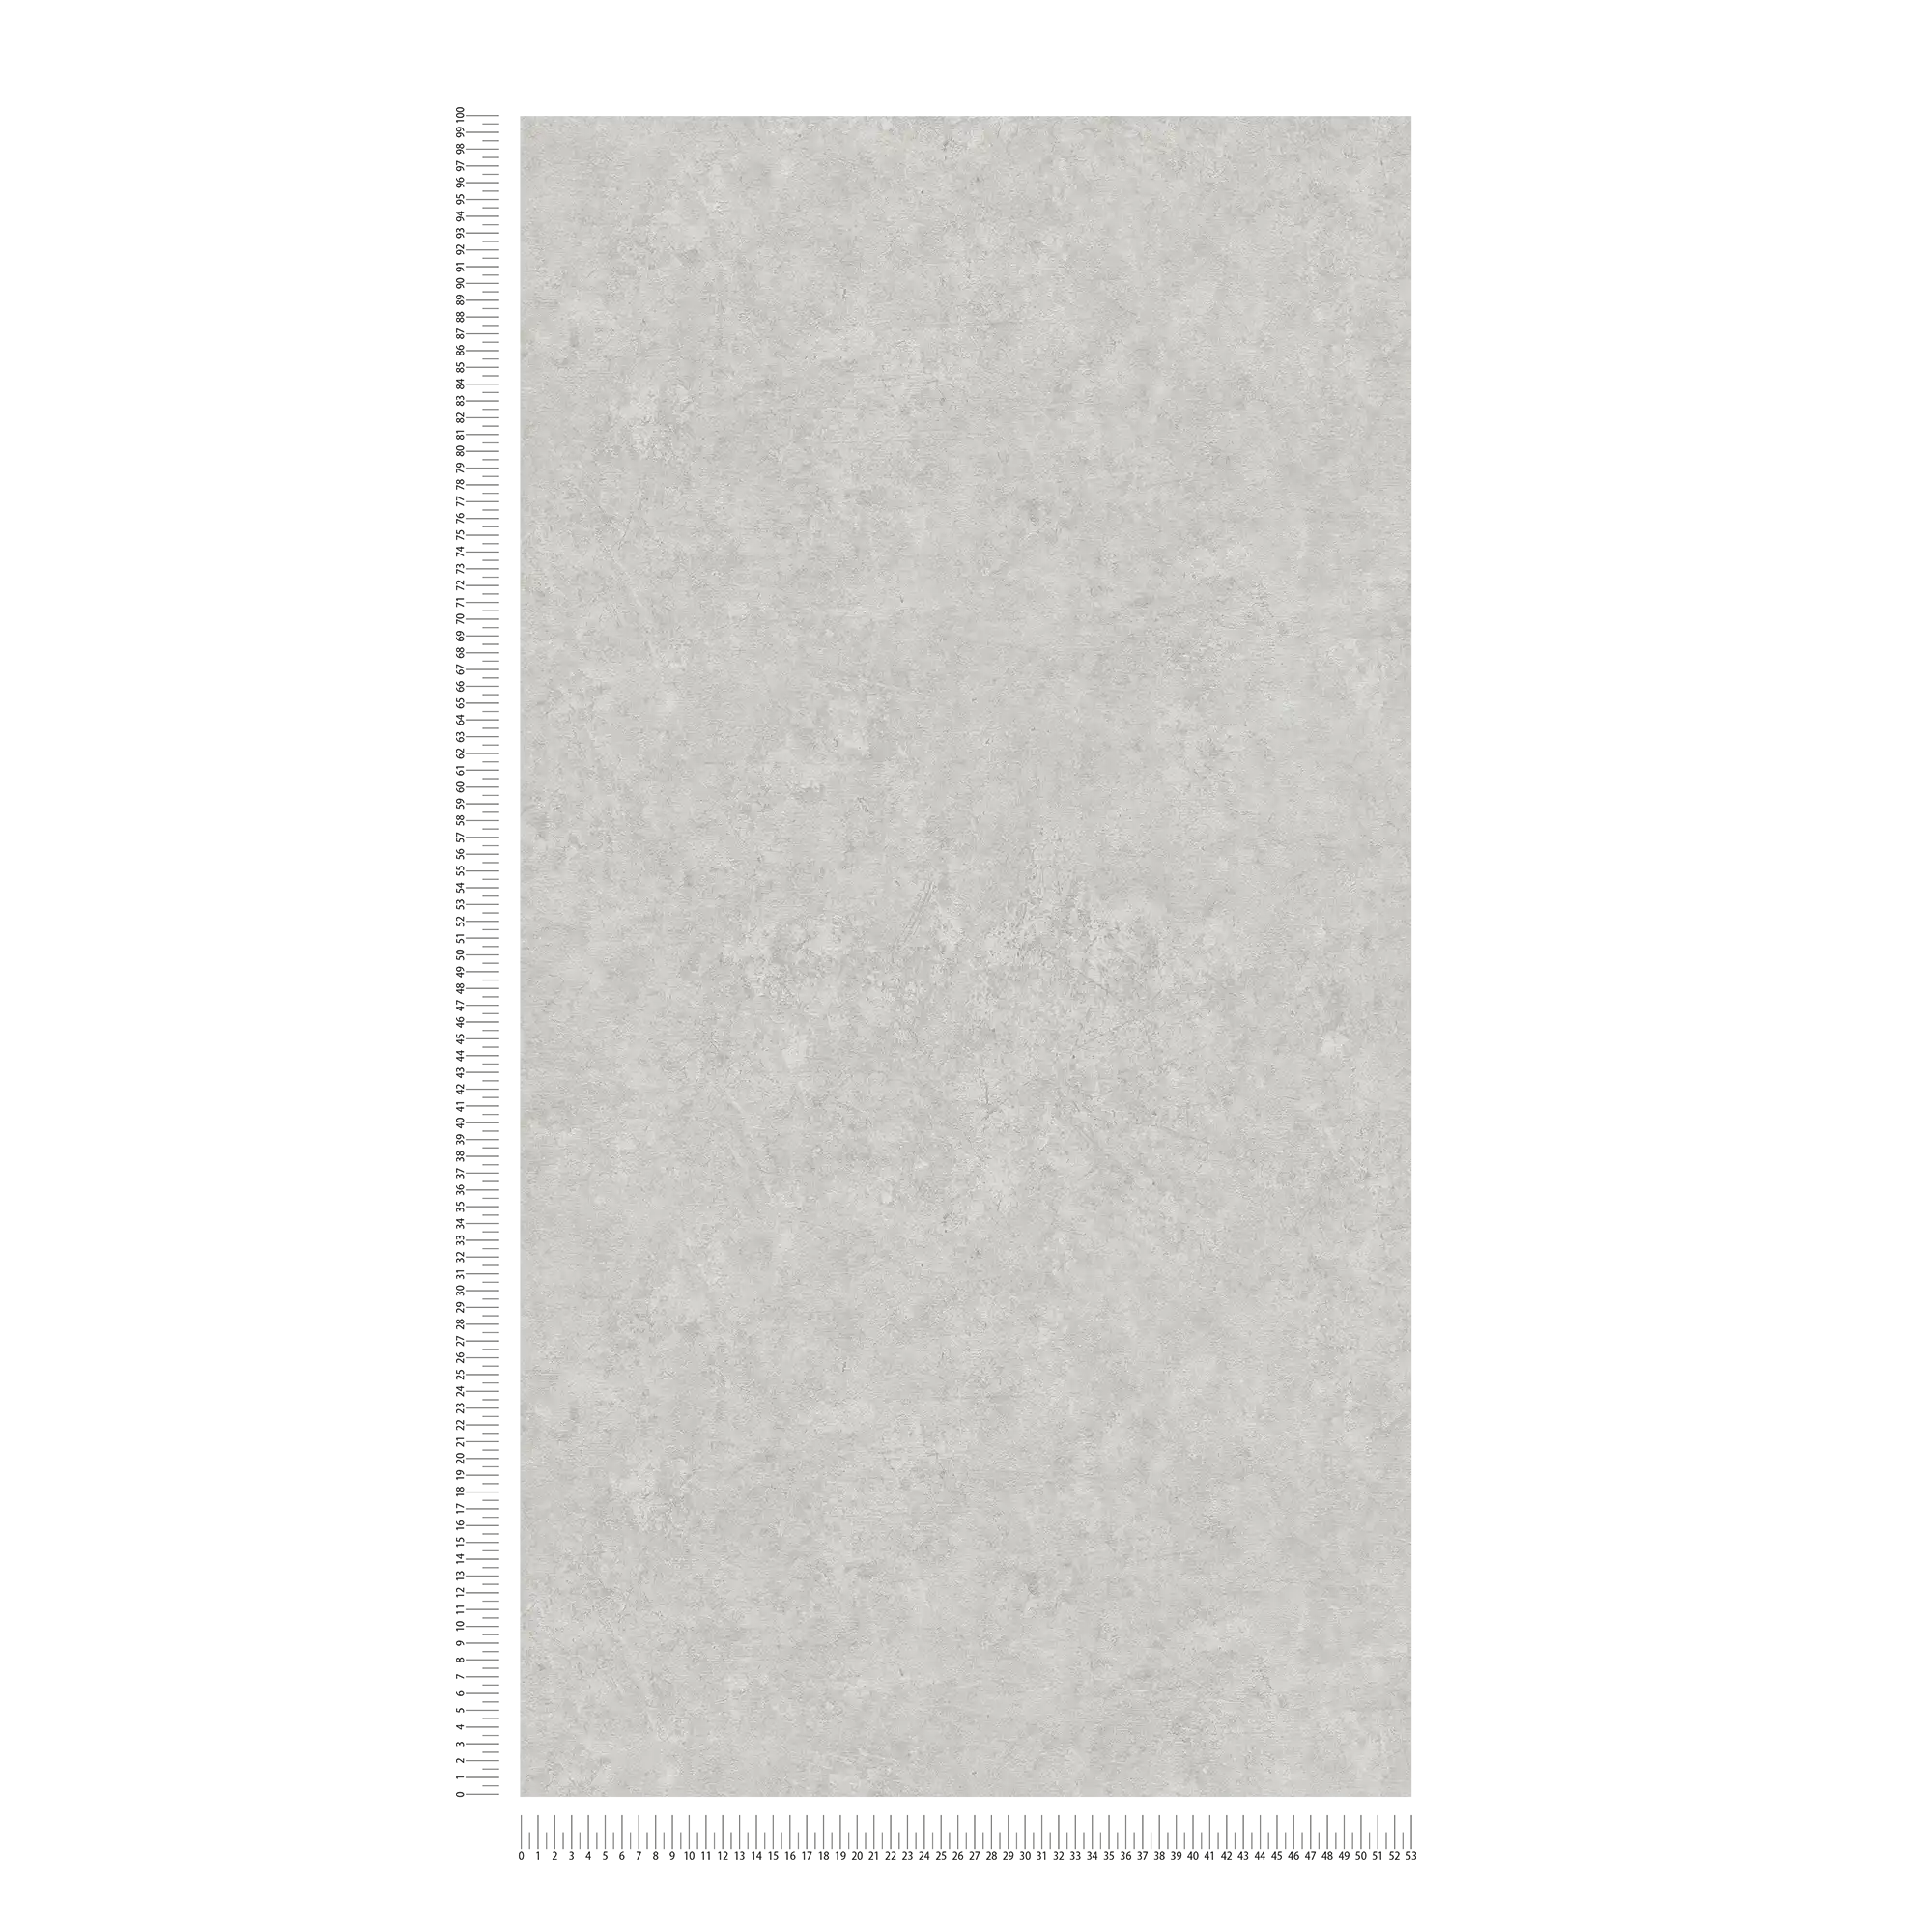             Papel pintado tejido-no tejido con aspecto de hormigón - gris
        